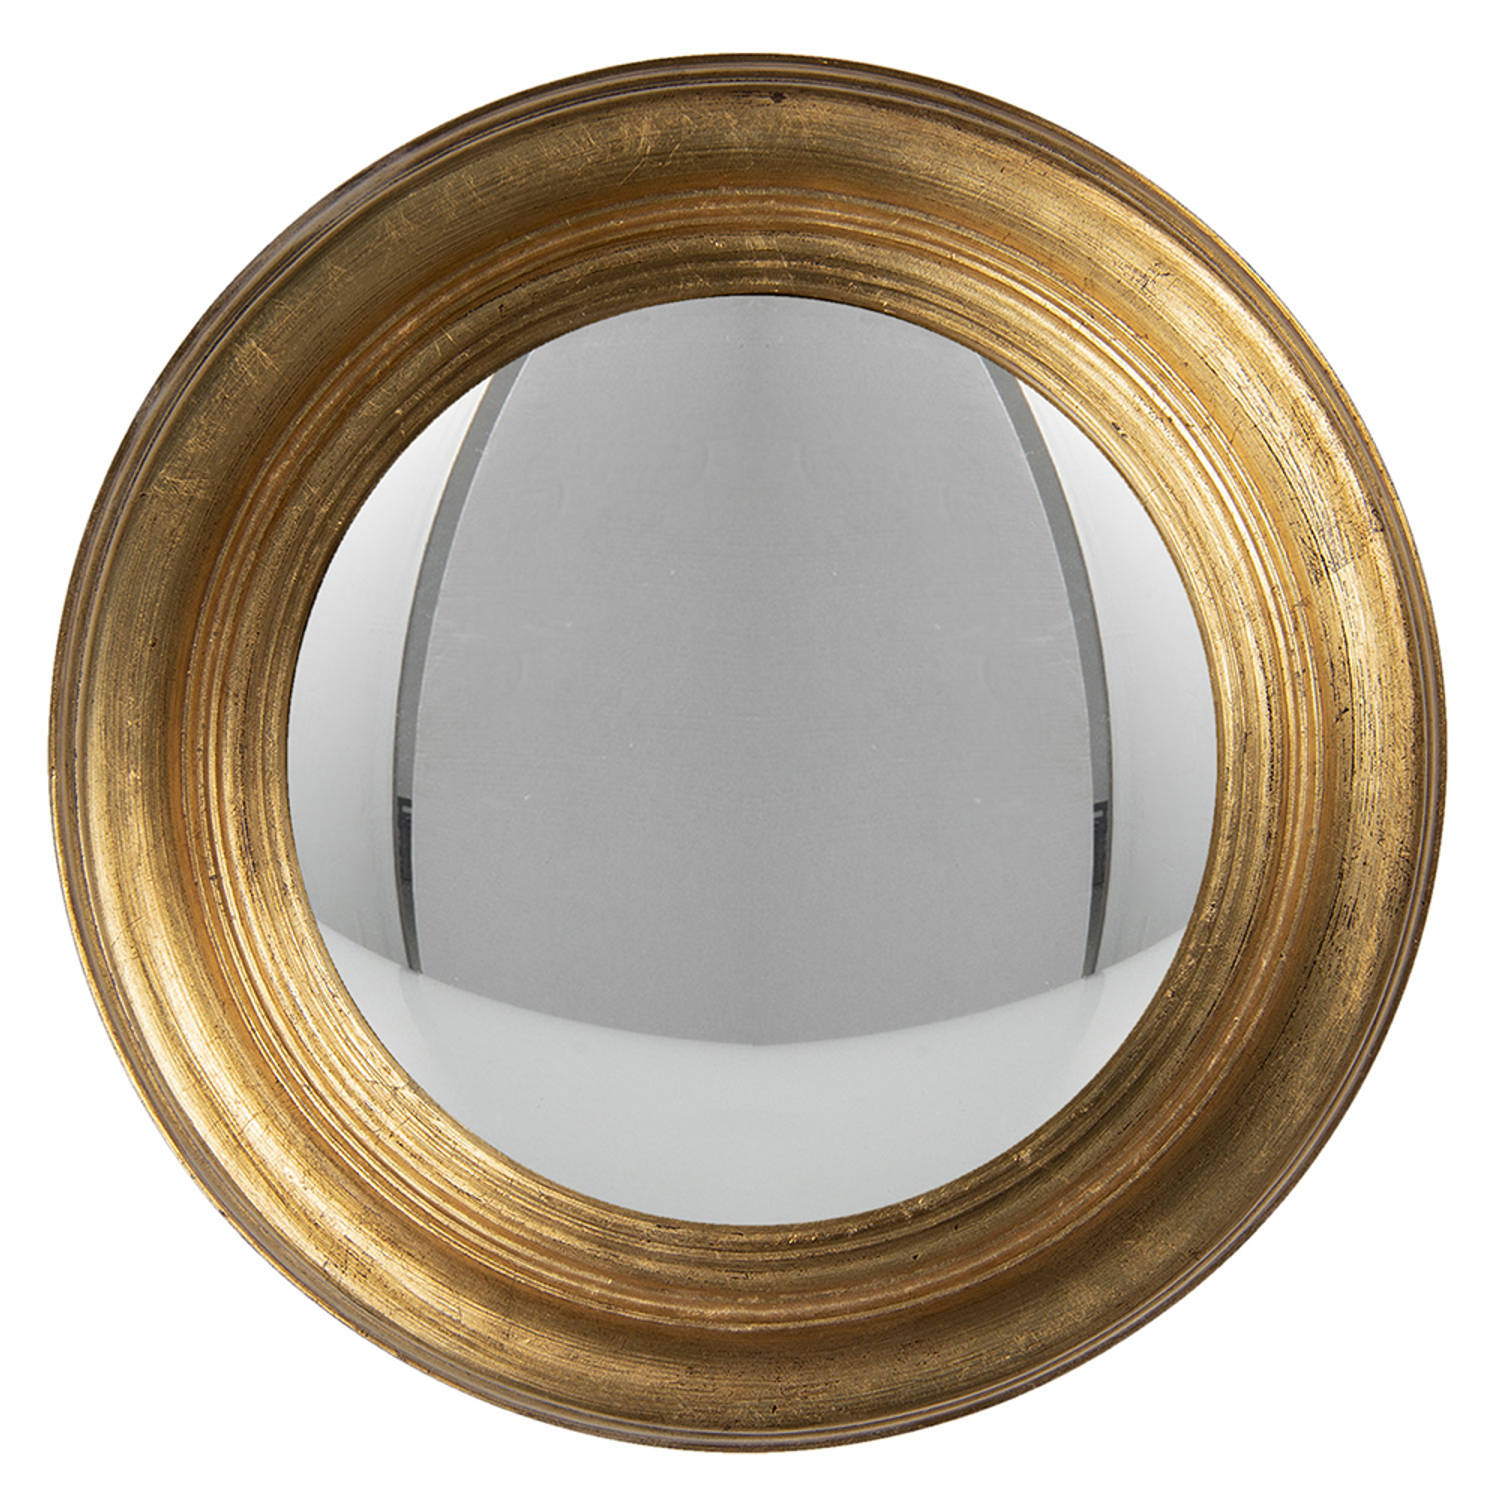 HAES DECO Bolle ronde Spiegel Goudkleurig Ø 34x4 cm Hout-Glas Wandspiegel, Spiegel rond, Convex Glas